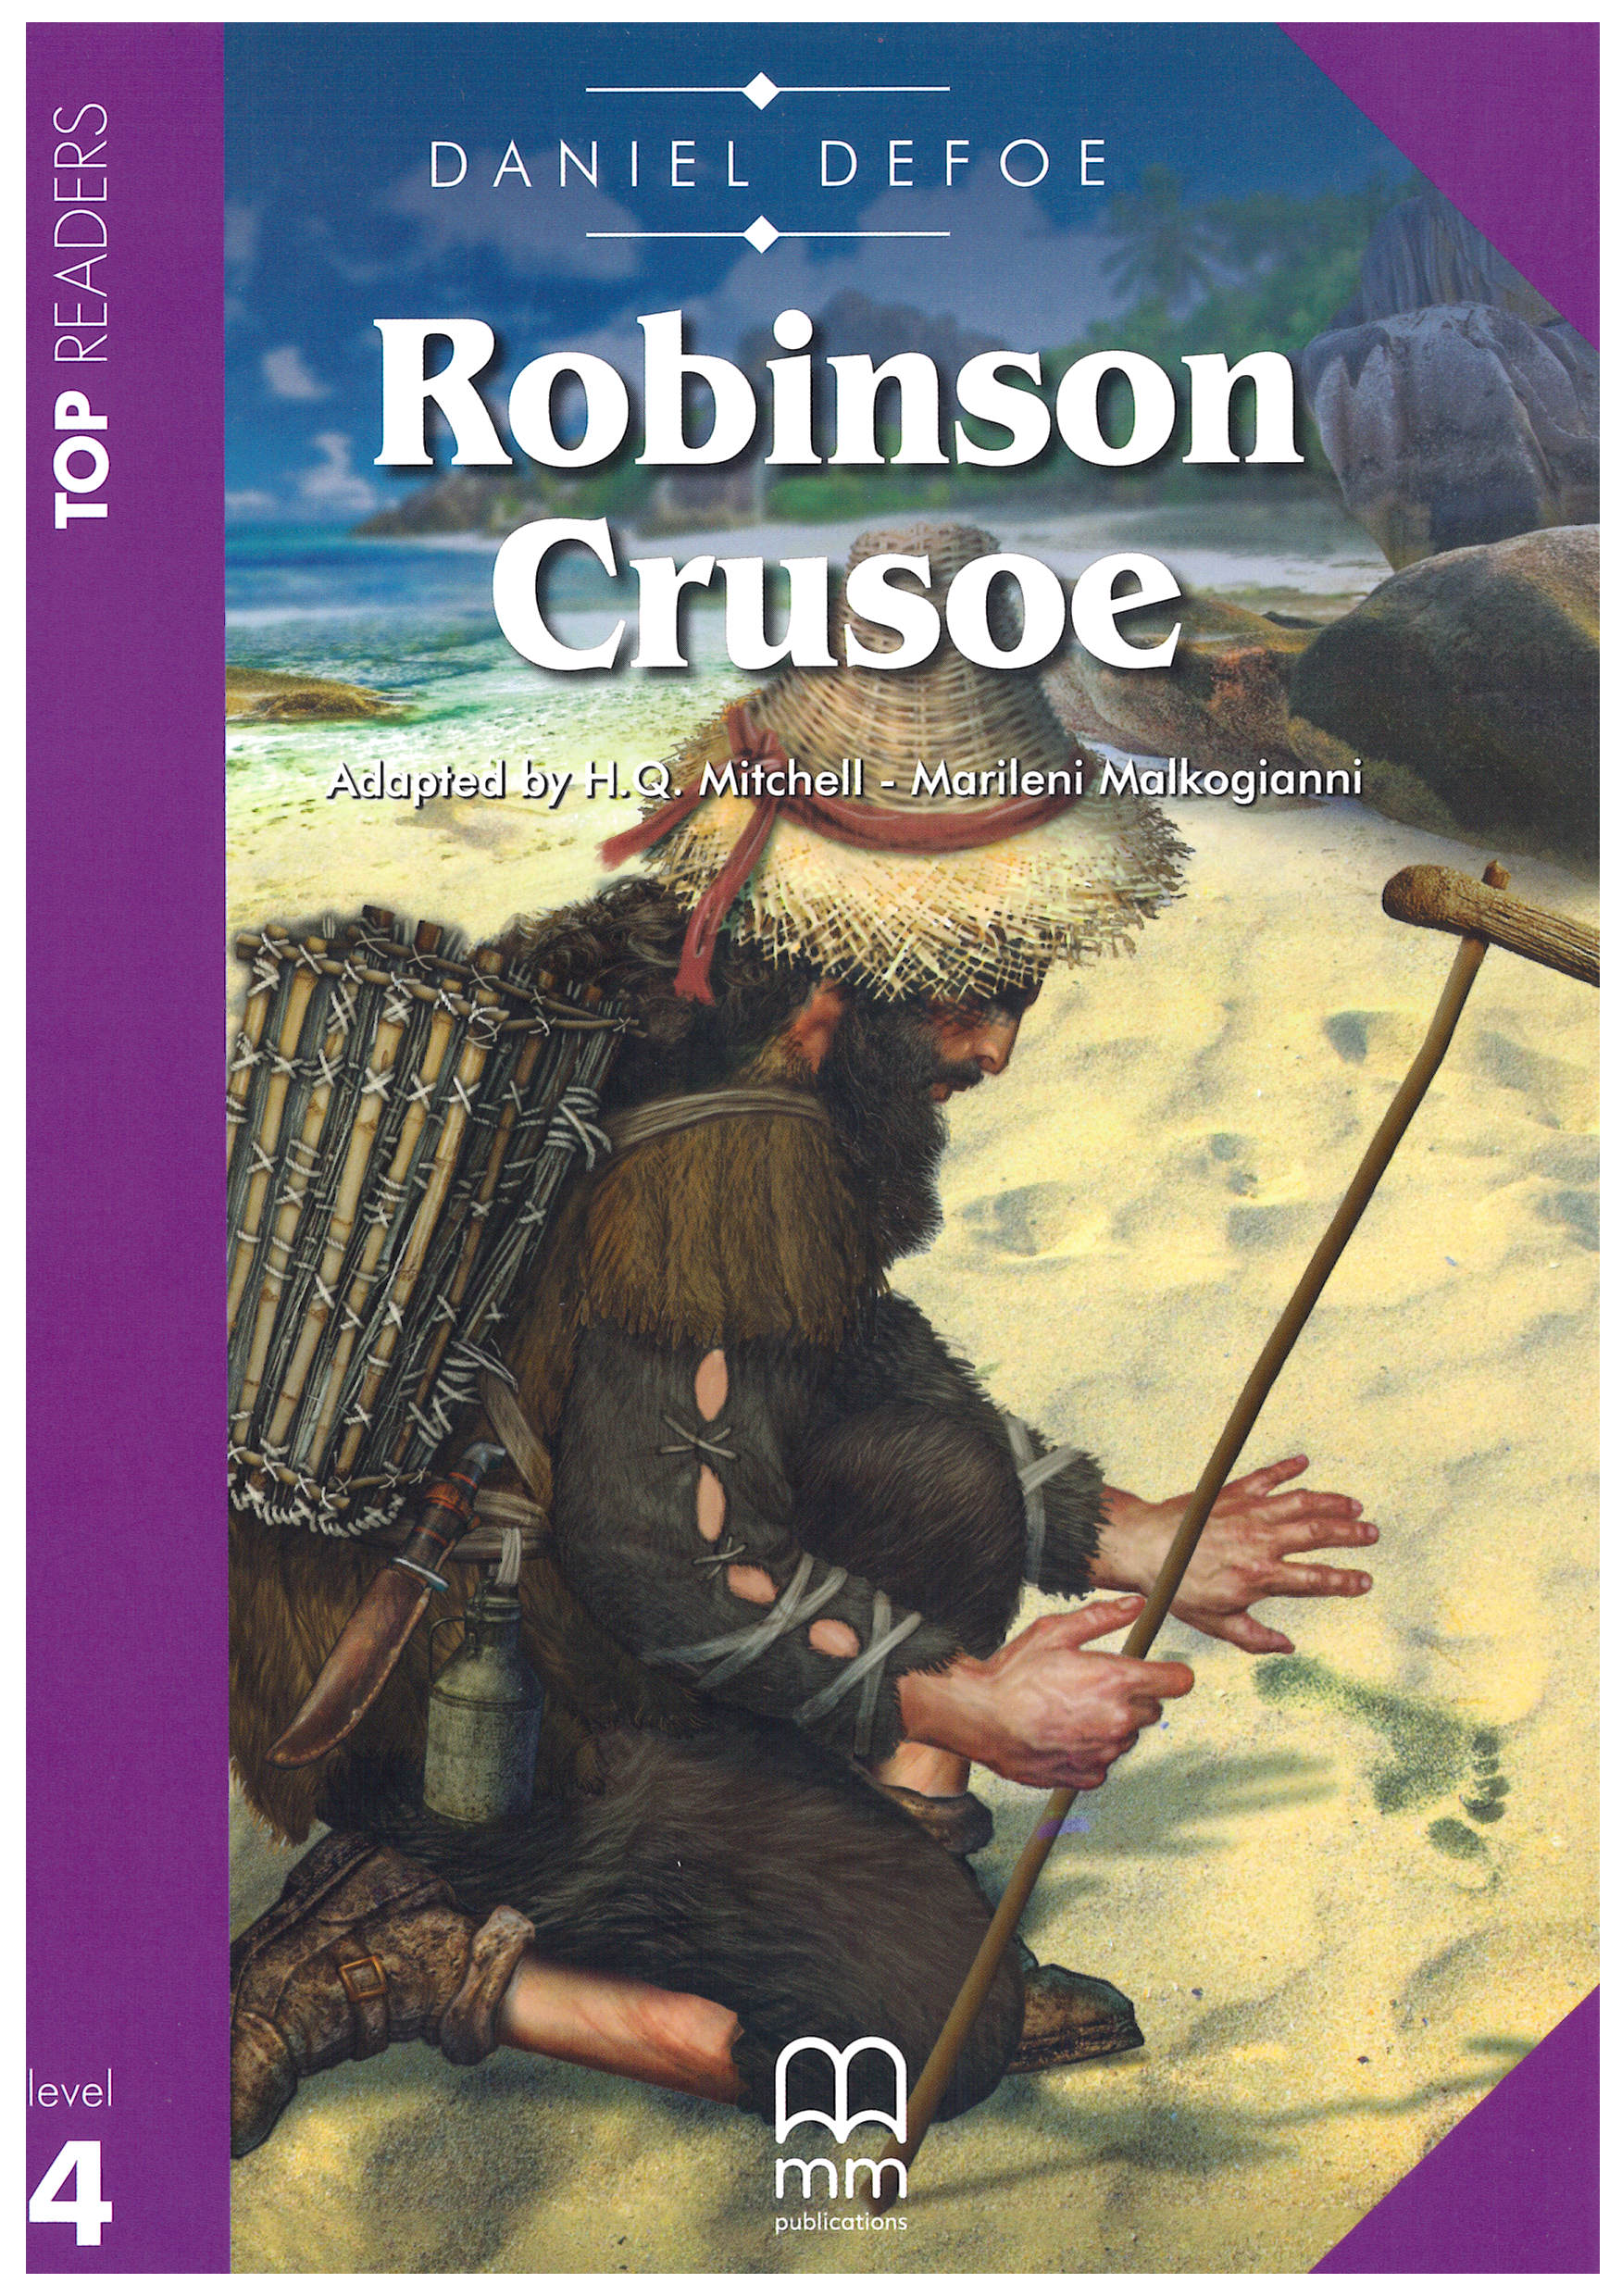 robinson crusoe novel